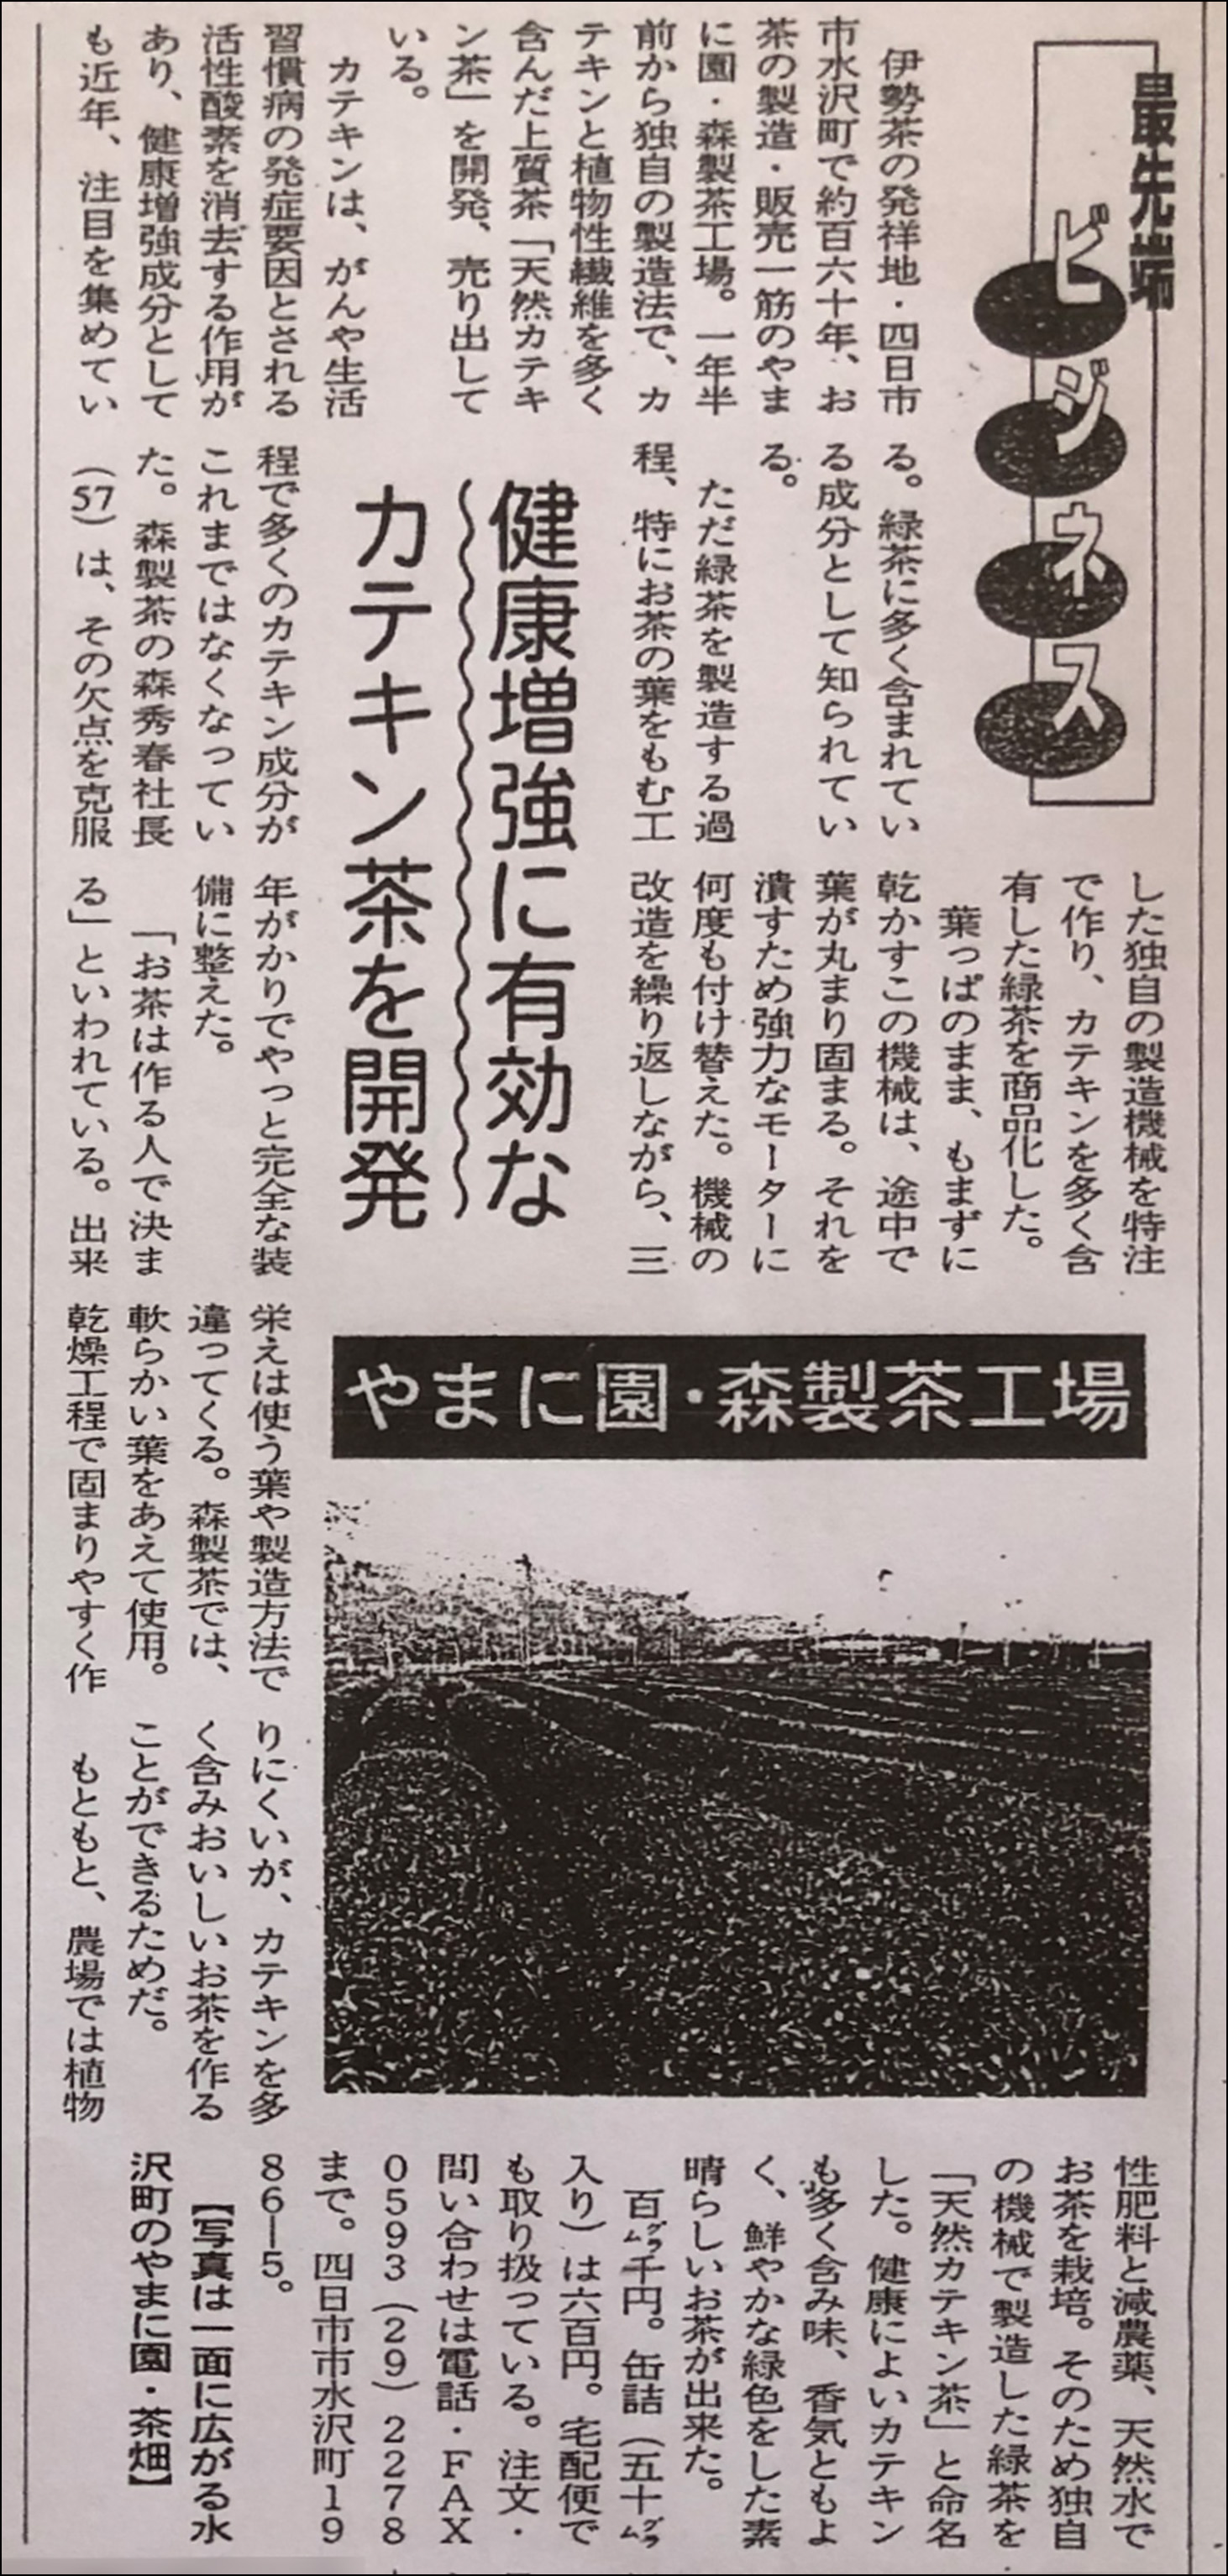 新聞記事(2001年5月10日 ローカルみえ)の拡大写真